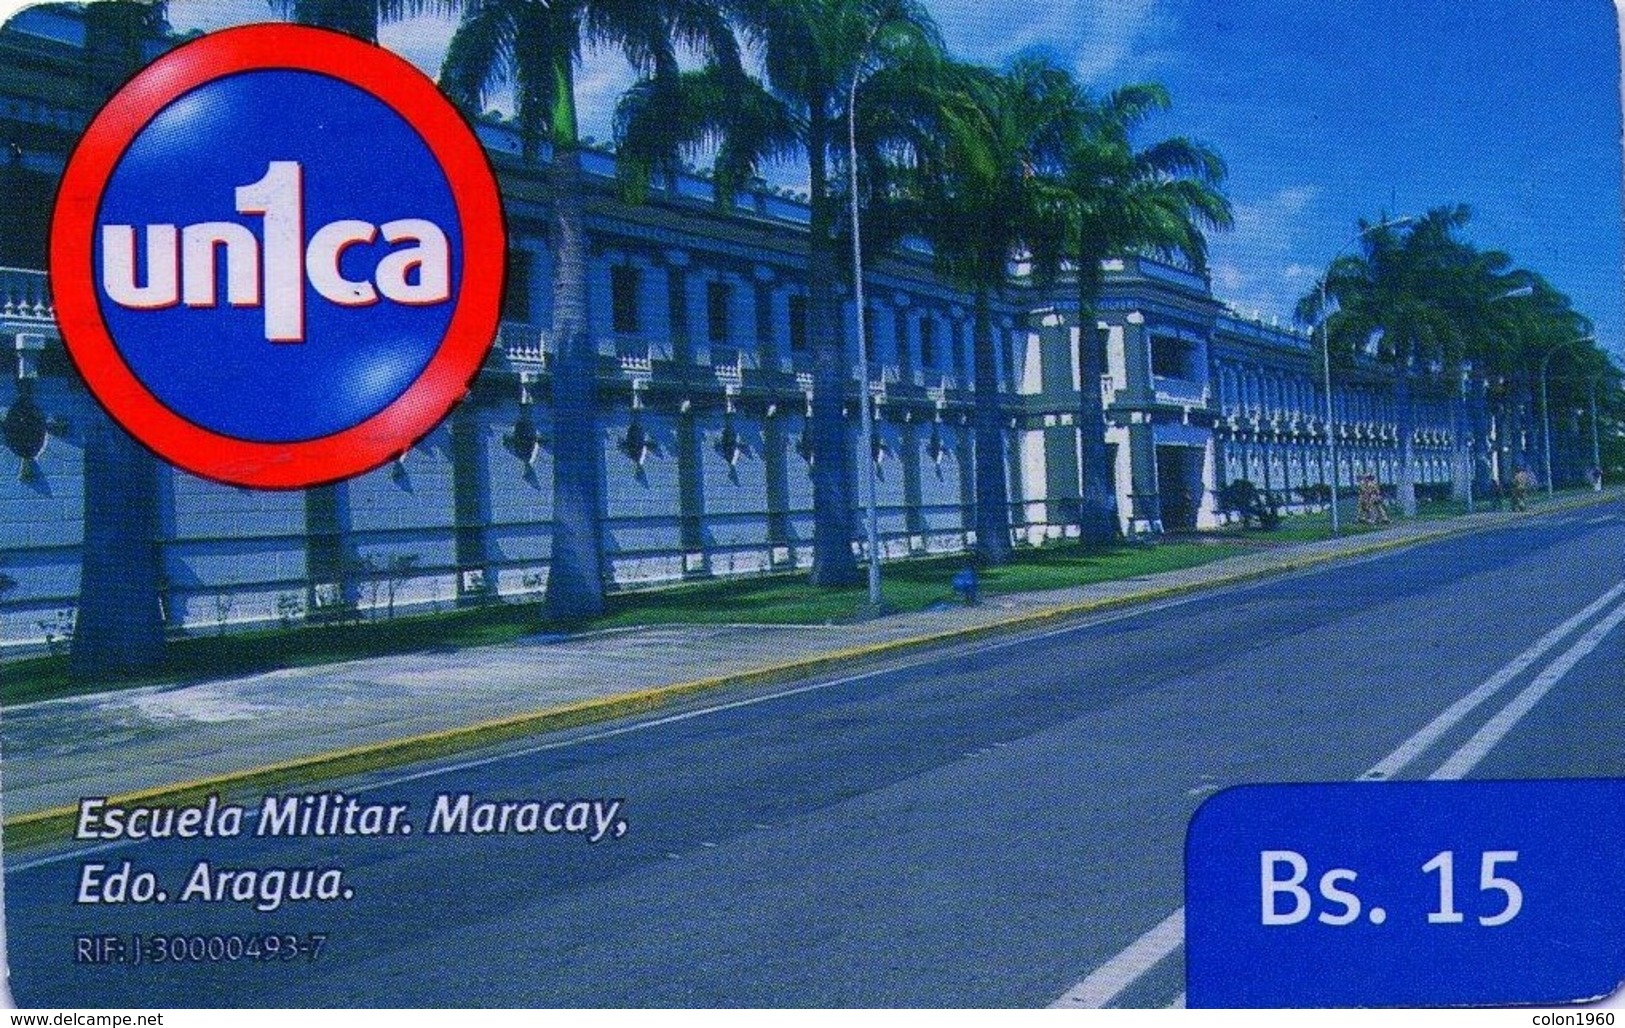 VENEZUELA, GSM-RECARGA. Escuela Militar, Maracay. Edo. Aragua. UI091121. VE-UNICA-U-091121. (280). - Armée